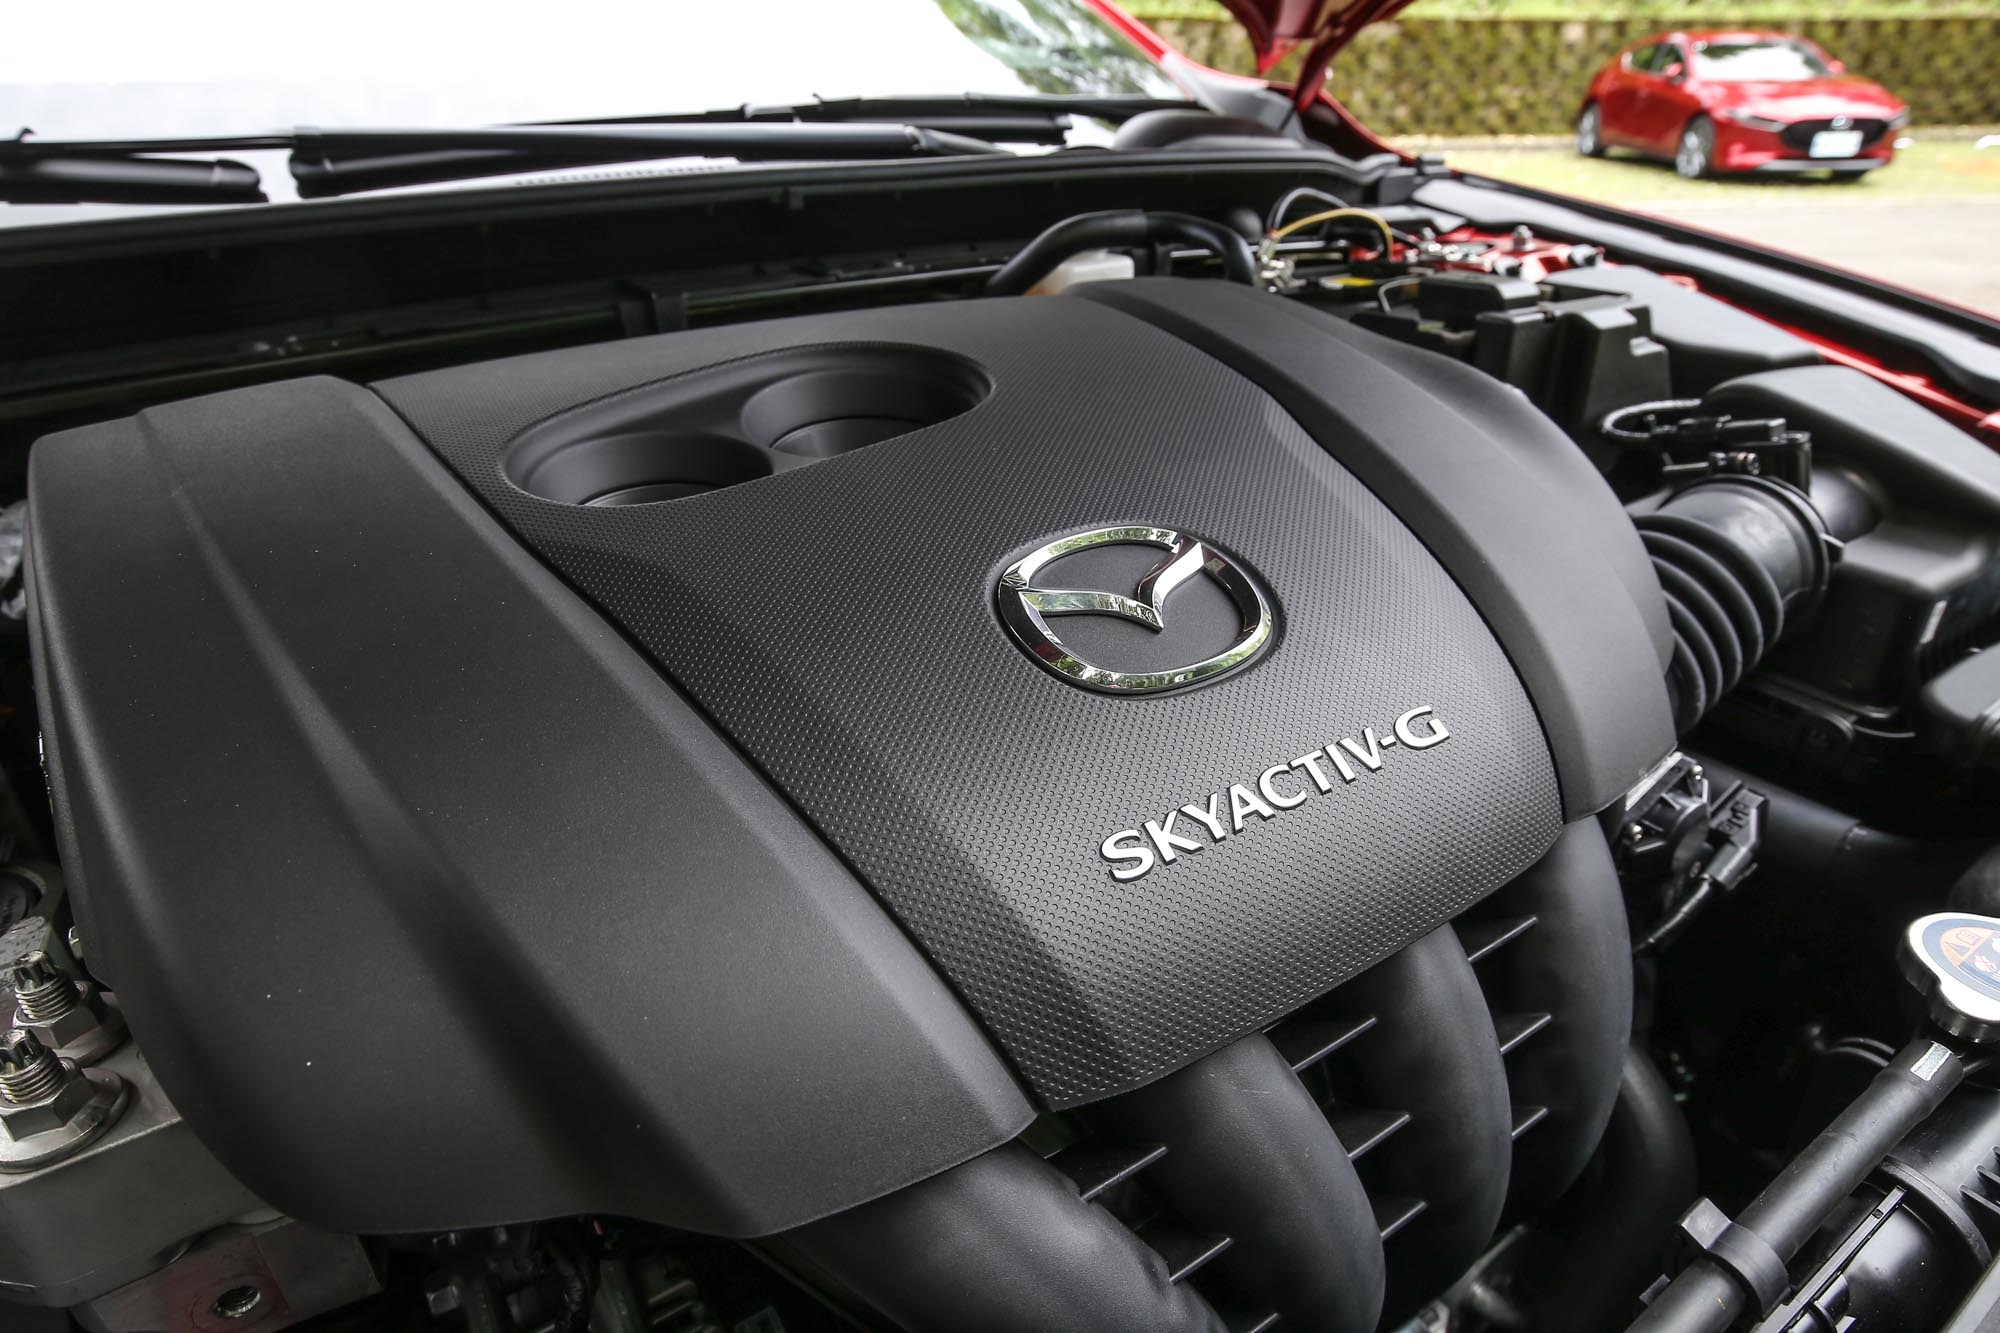 新世代 Mazda3 都搭載著相同的 Skyactiv-G 自然進氣汽油引擎，2.0 升的排氣量中具備 165ps/6000rpm 最大馬力與 21.7kgm/4000rpm 最大扭力輸出。